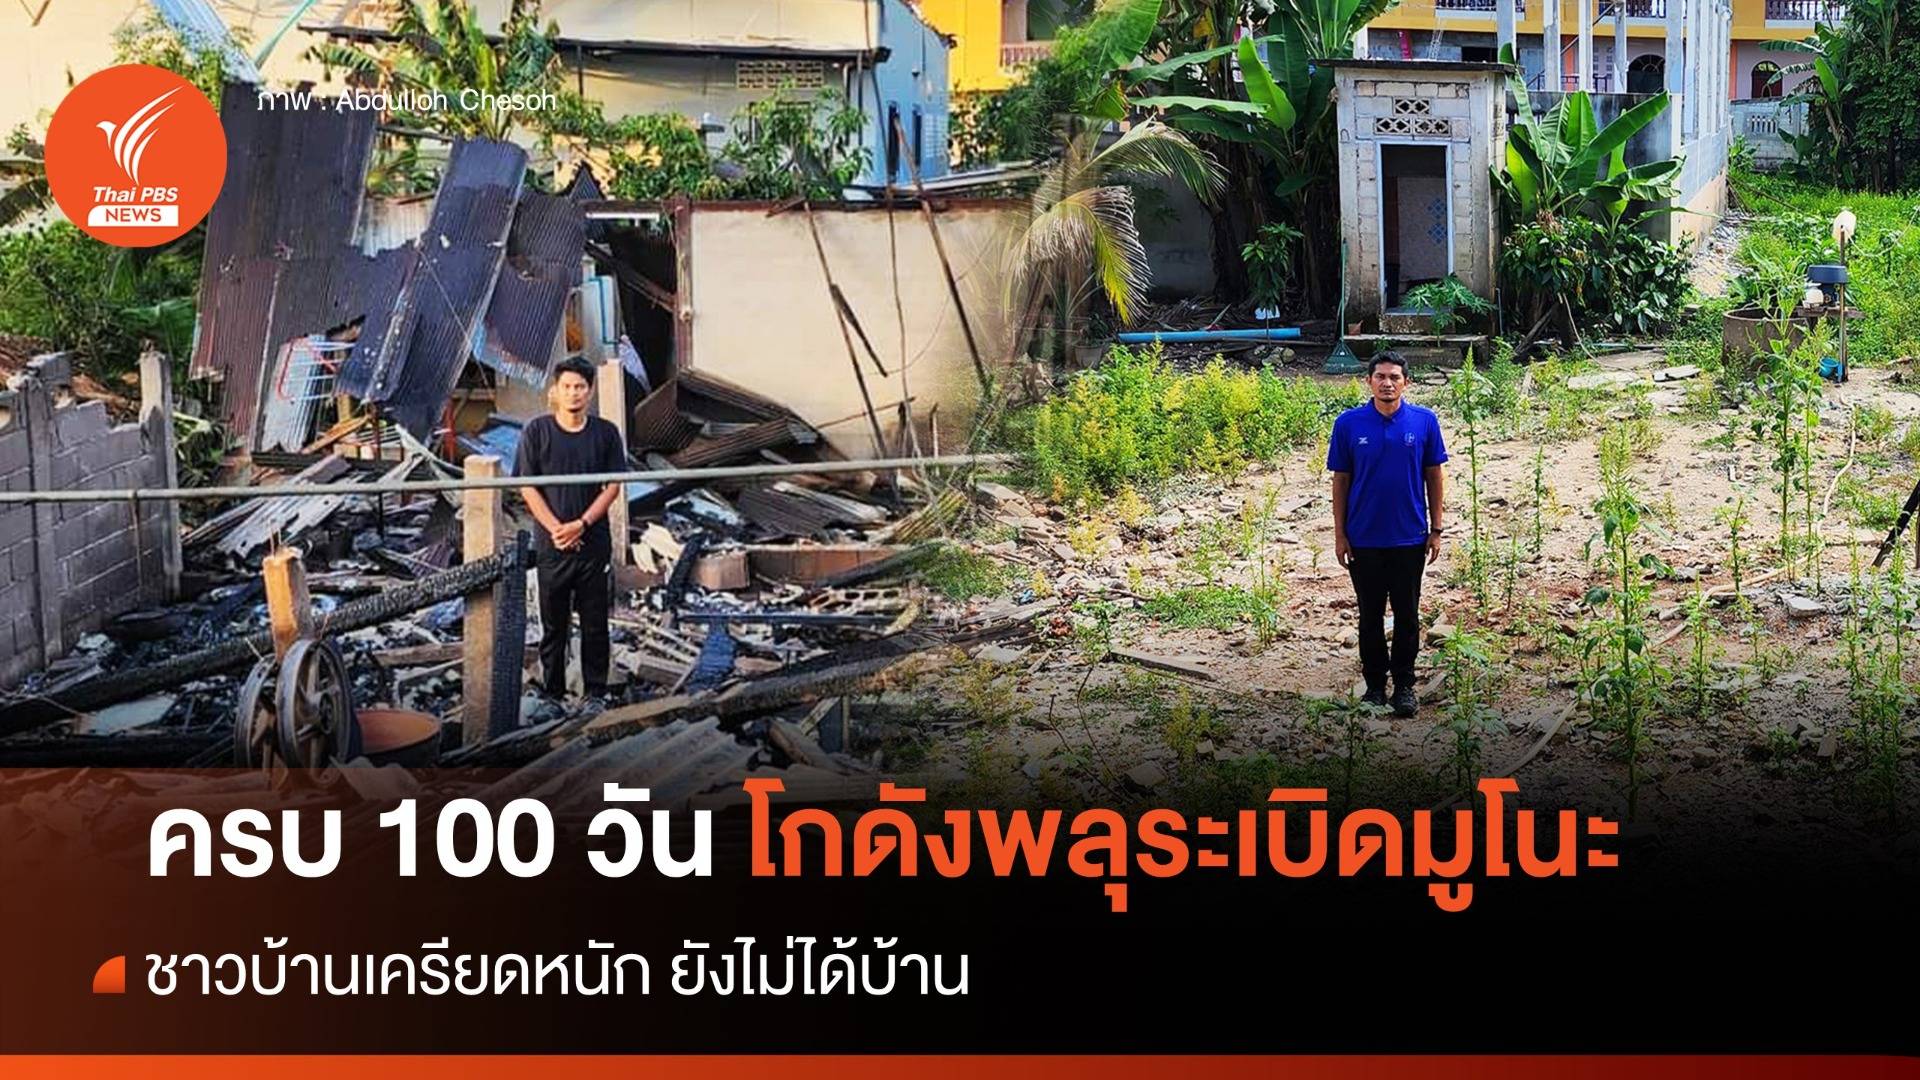 ครบ 100 วันหลังเหตุระเบิด "มูโนะ" ชาวบ้านเครียดหนัก ยังไม่ได้บ้าน